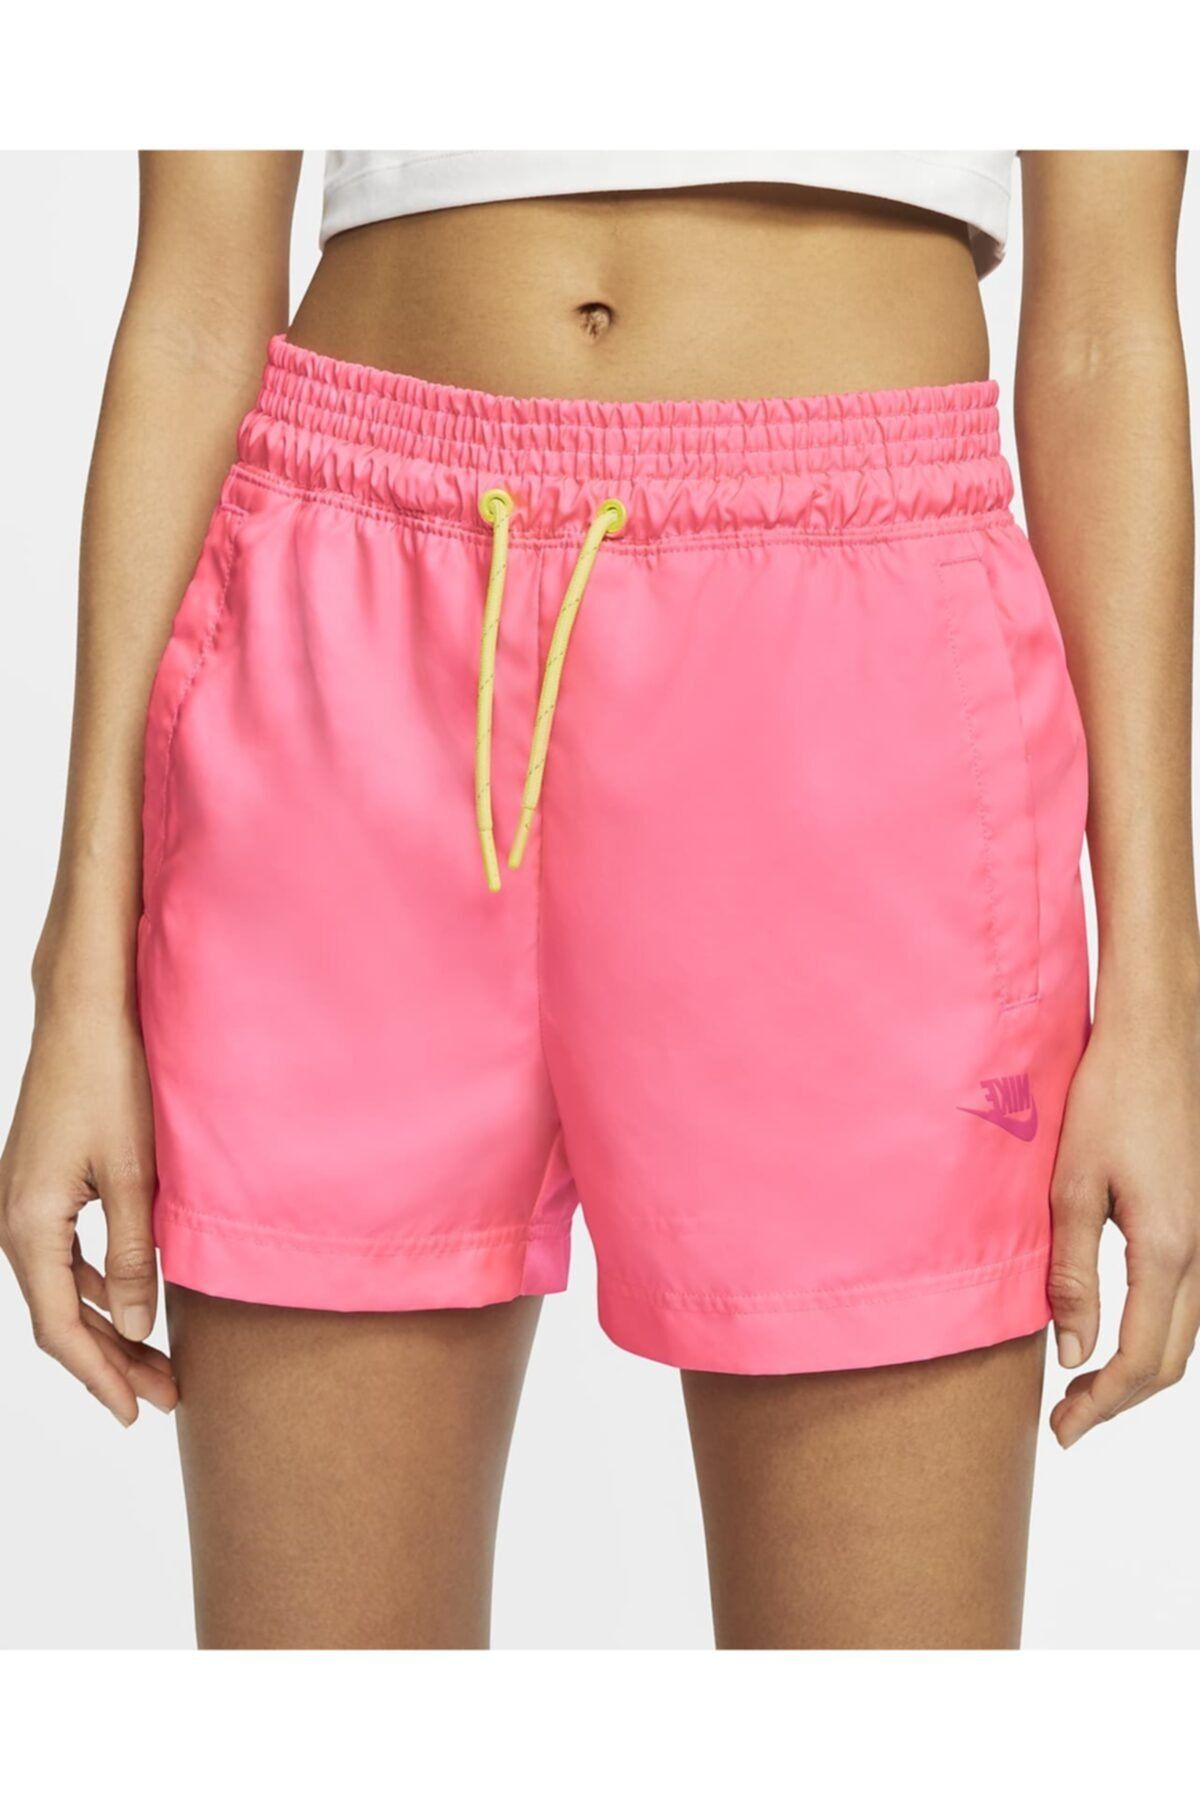 Nike Pembe Şort Kadın Sportswear Women's Woven Shorts - Pink Cw2509-679